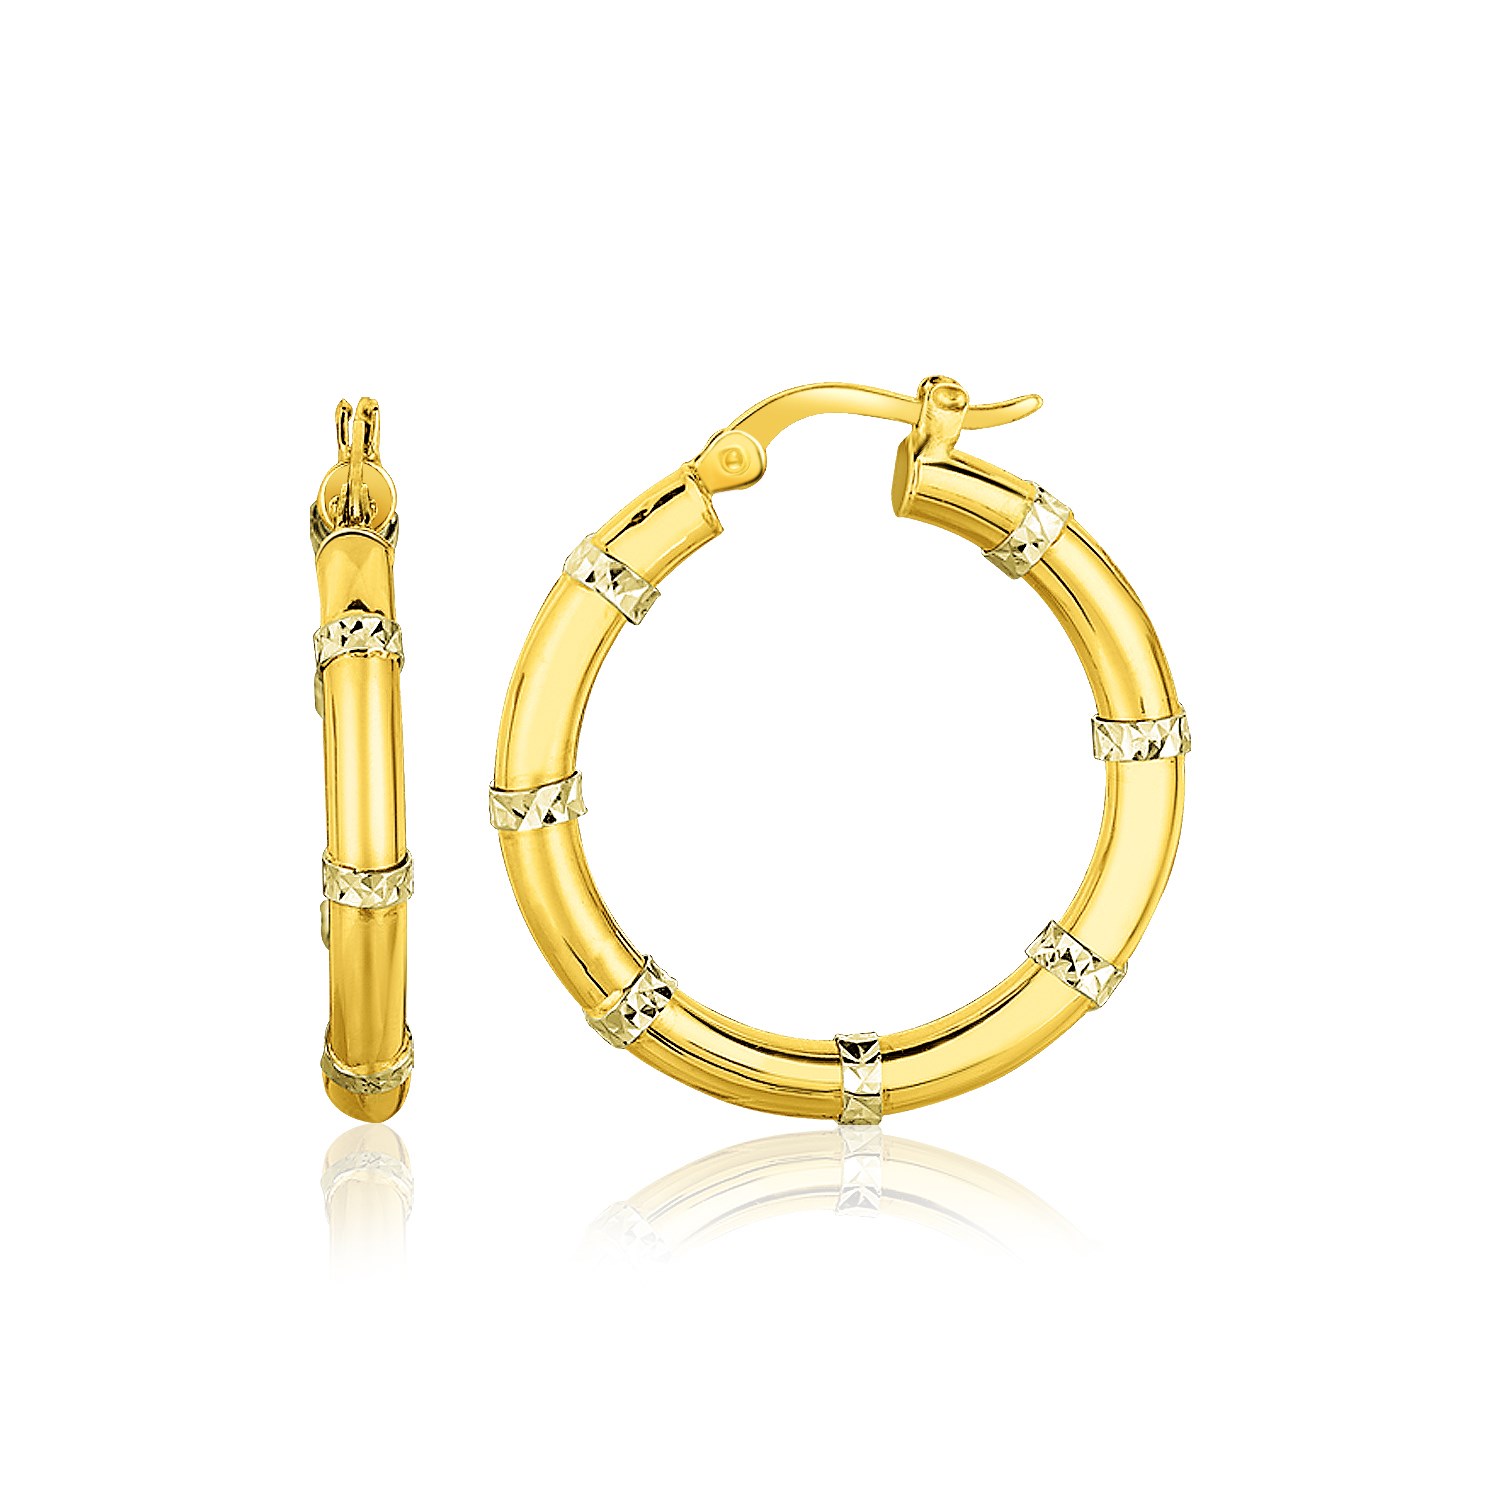 14k Two-Tone Gold Alternate Textured Hoop Earrings